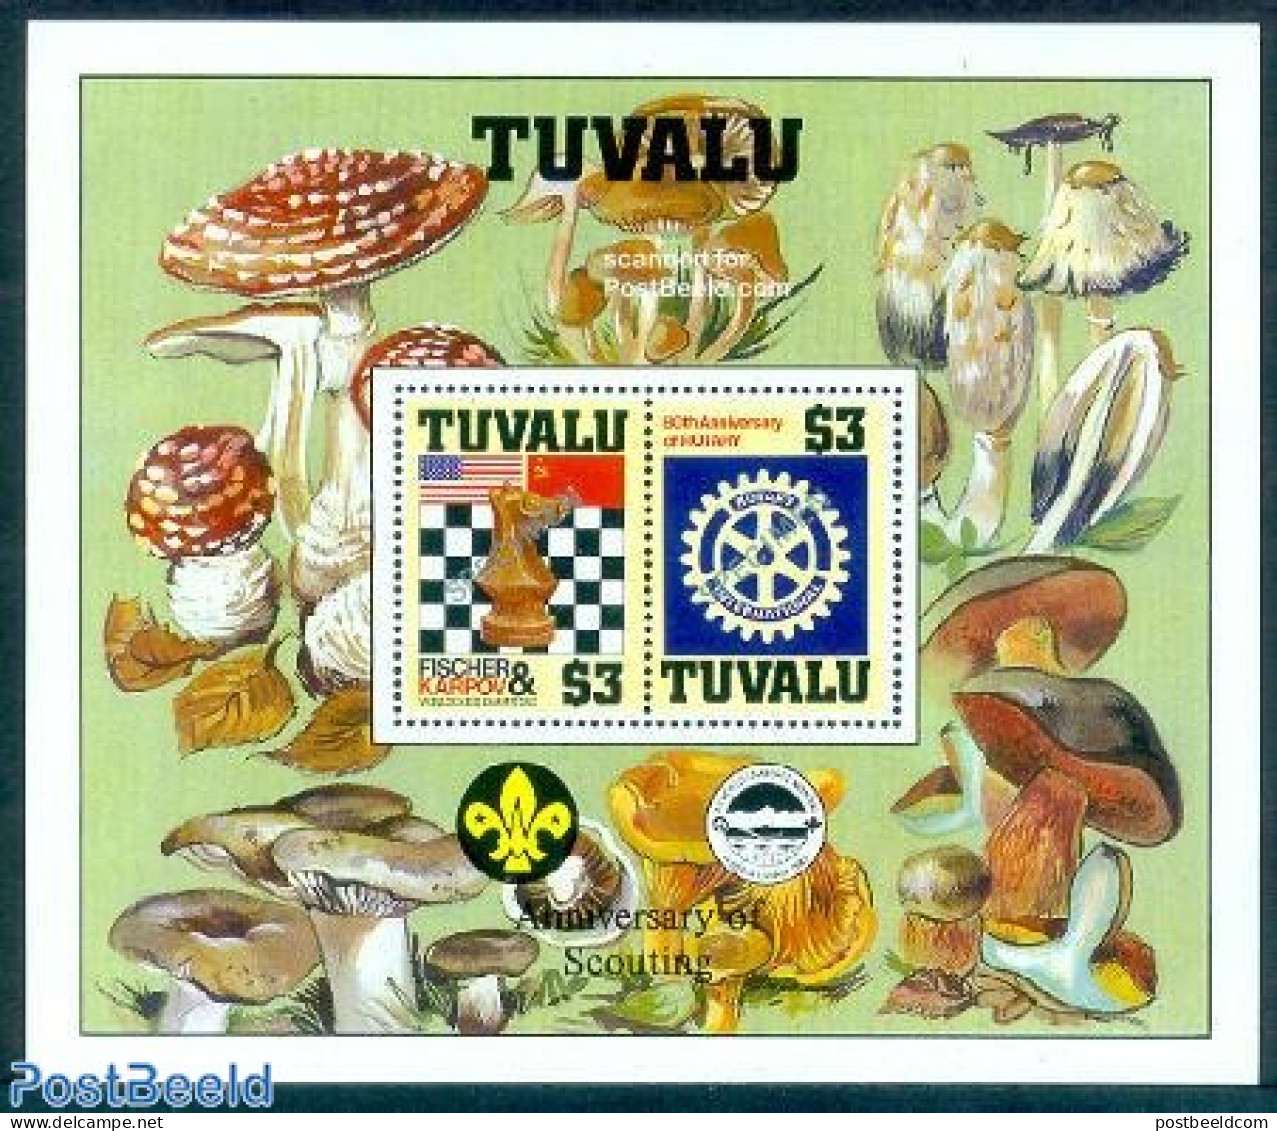 Tuvalu 1986 Chess/Rotary S/s Illustrated With Mushrooms, Mint NH, Nature - Sport - Various - Mushrooms - Chess - Rotary - Paddestoelen